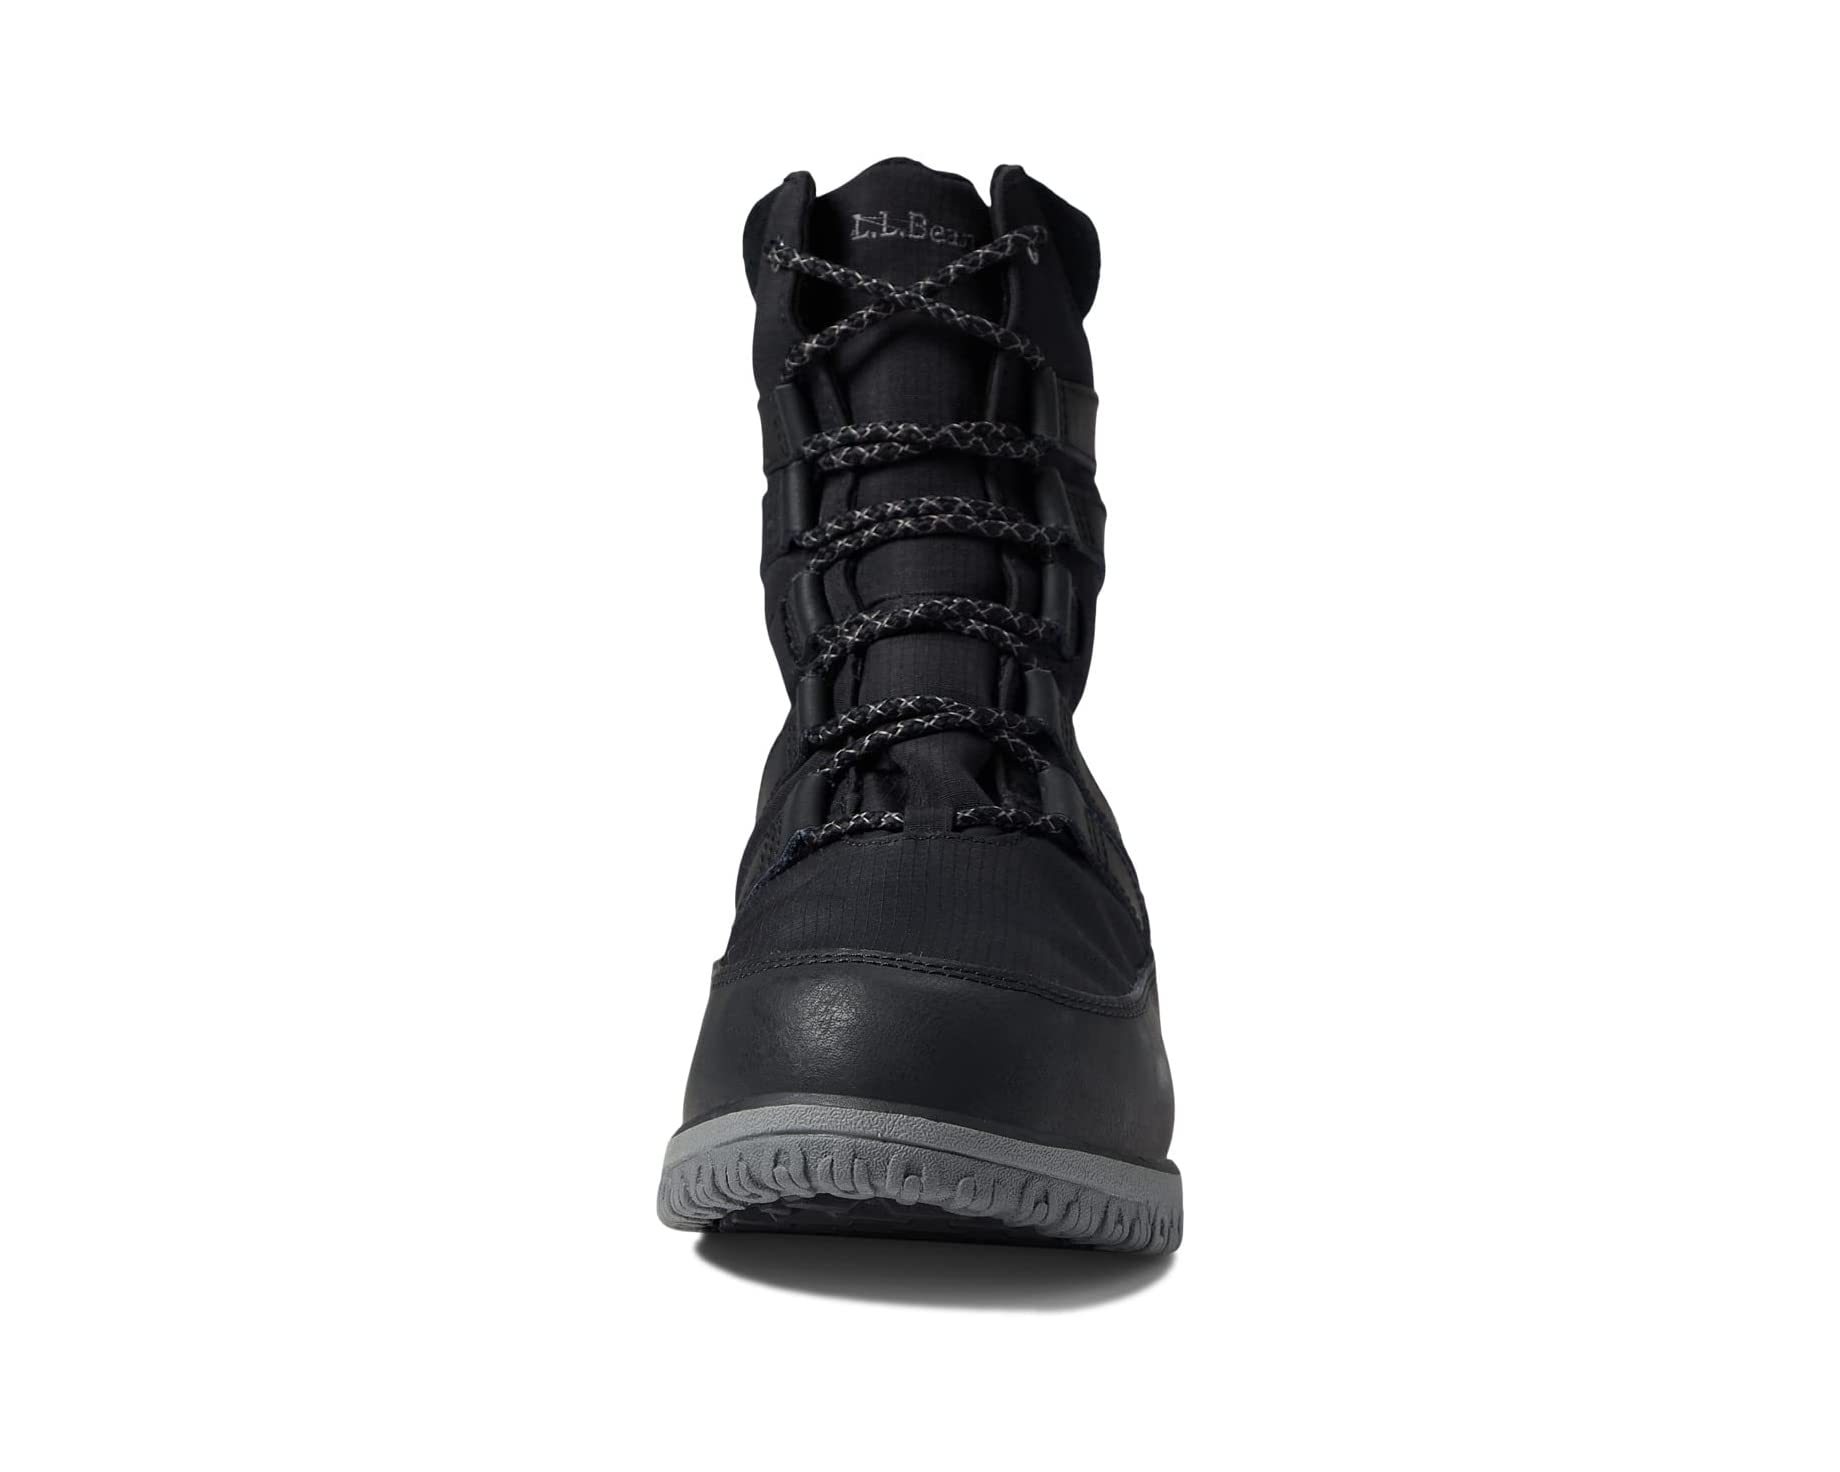 Ботинки Ultralight Boot Mid Waterproof Insulated L.L.Bean, черный кроссовки утепленные женские demix atlanta 2 mid wtr черный